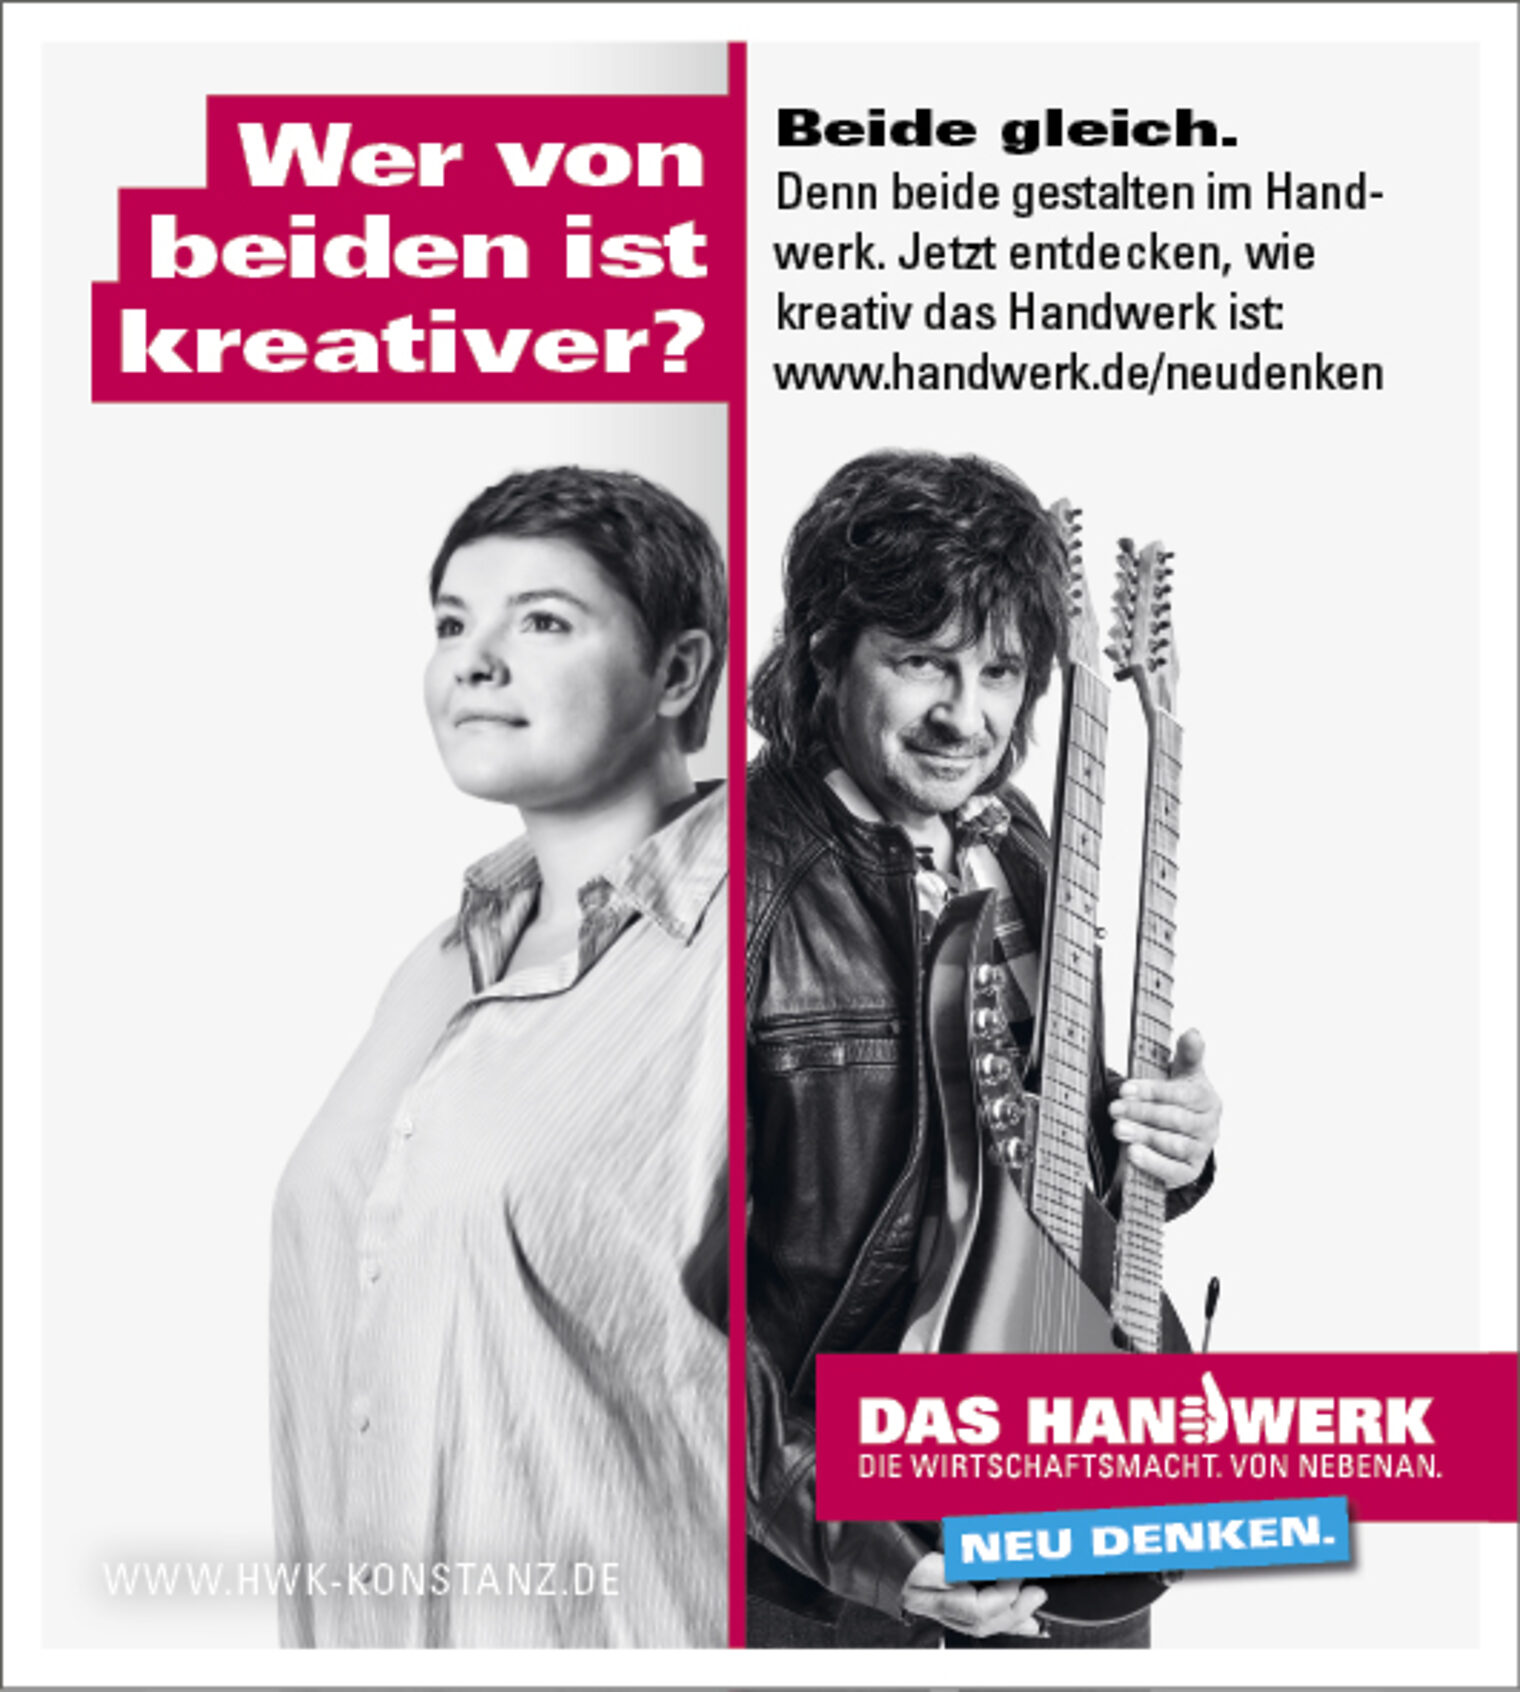 Anzeigenmotiv der Imagekampagne des deutschen Handwerks: Mann und Frau mit Spruch "Wer von beiden ist kreativer?"